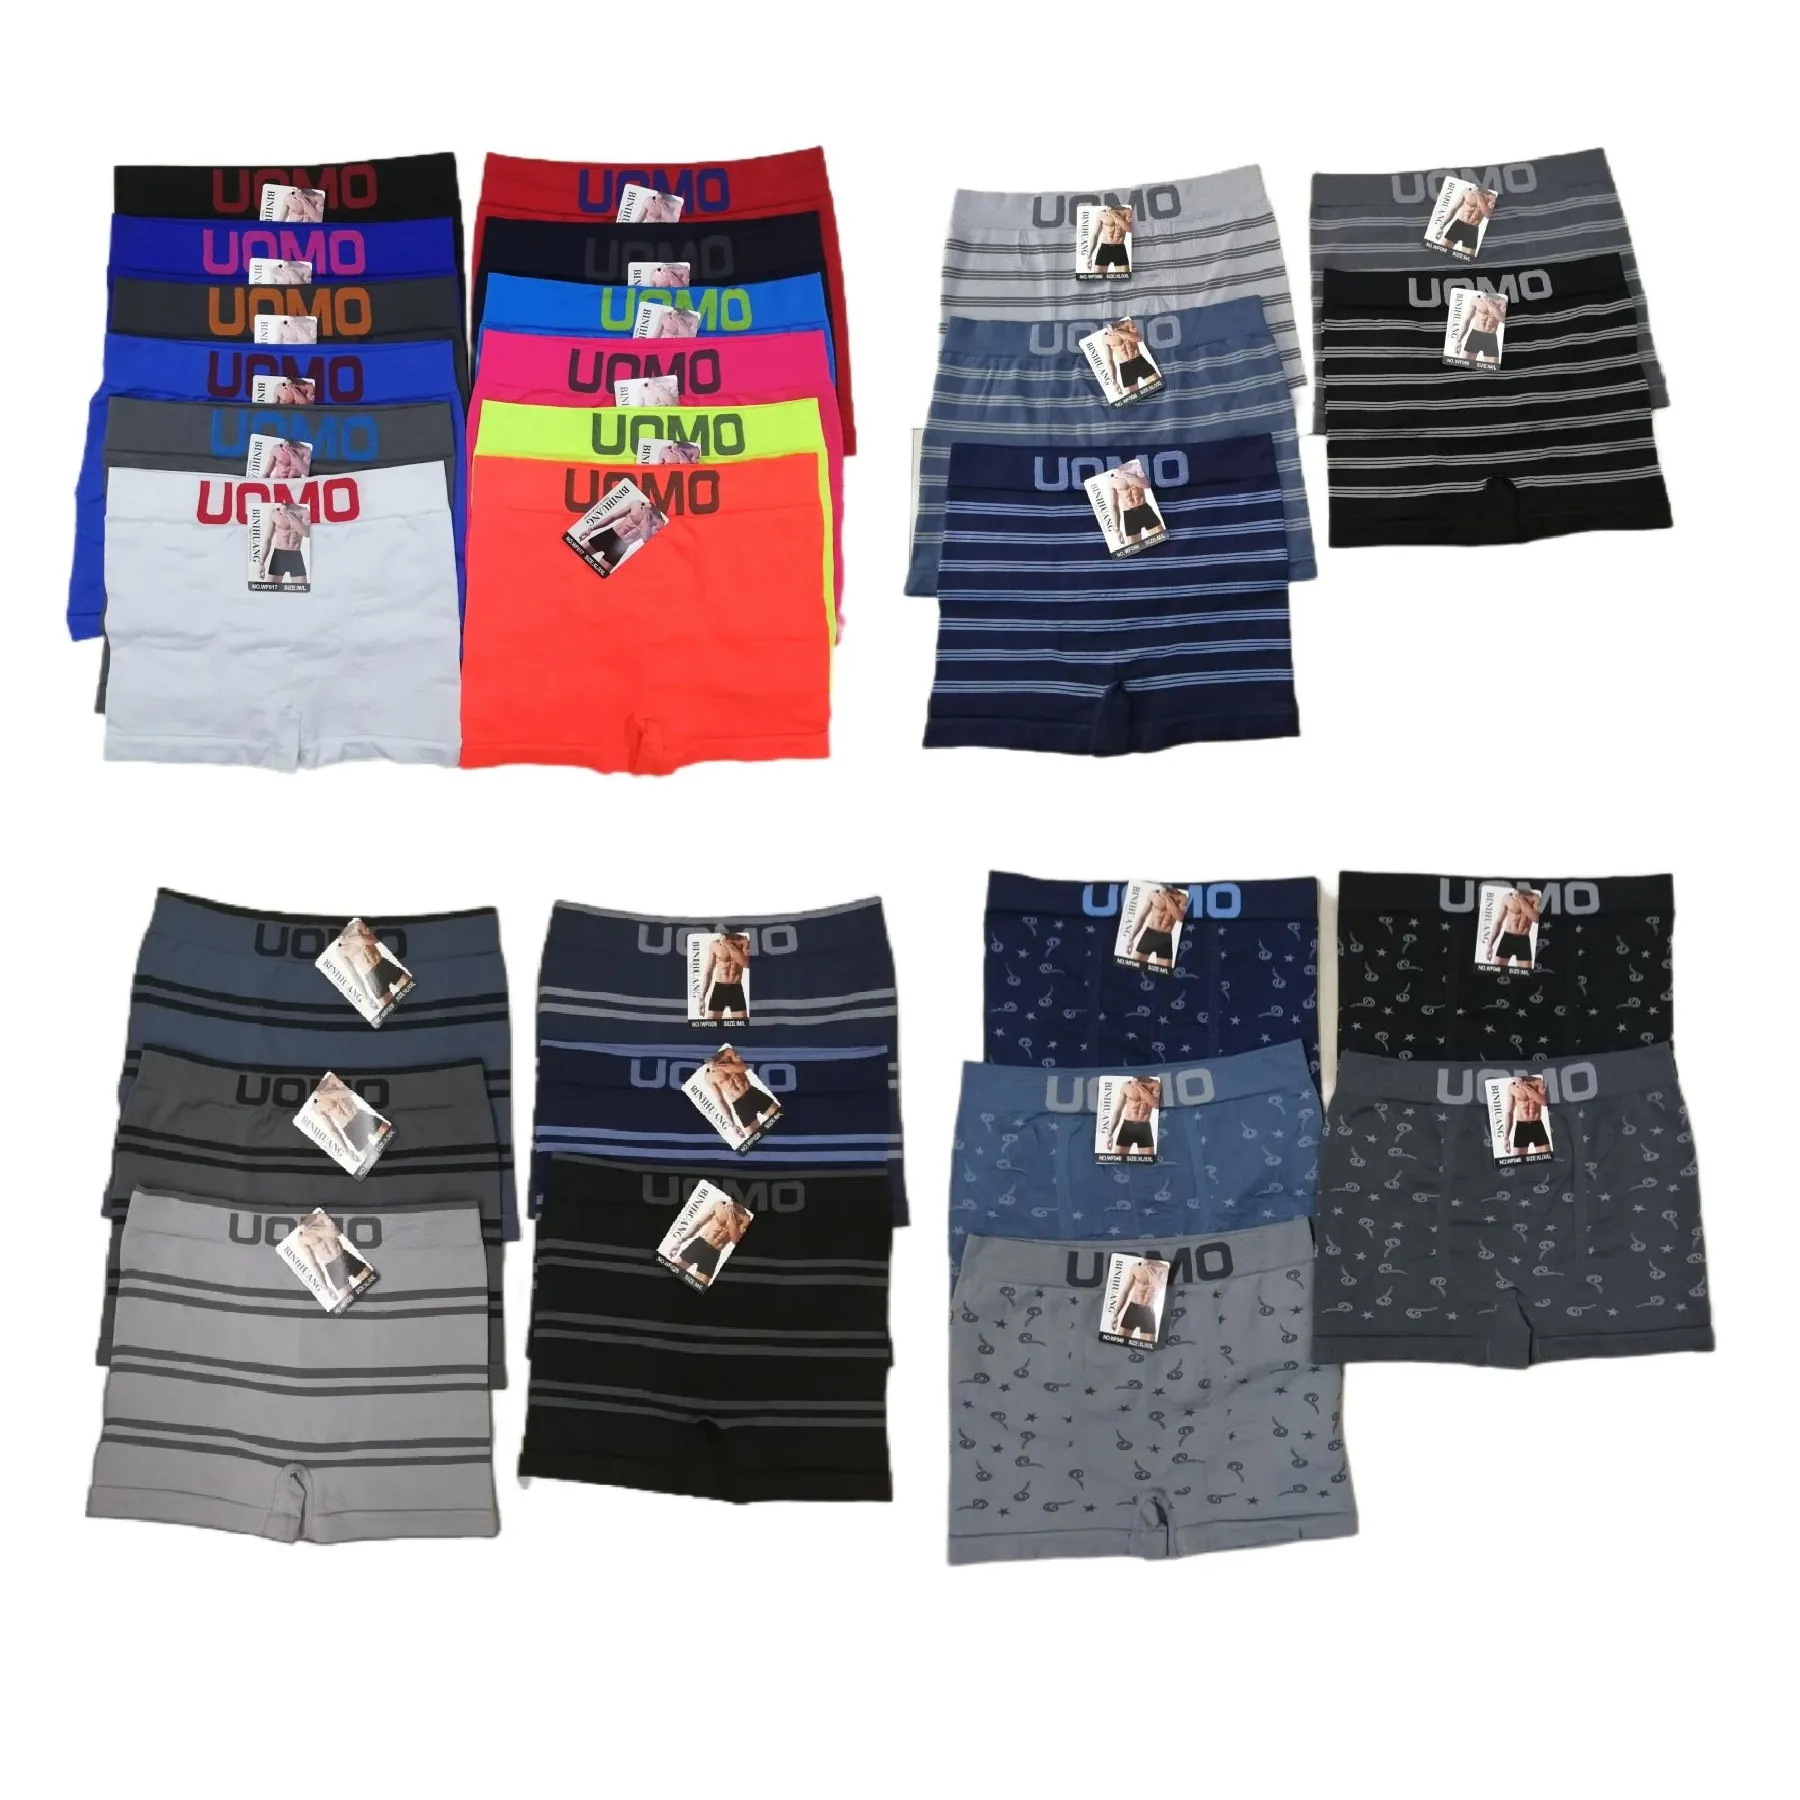 Wholesale Cheap bulk Men's Underwear under garments cueca liquidation man boxer briefs stocklot underwear with low price